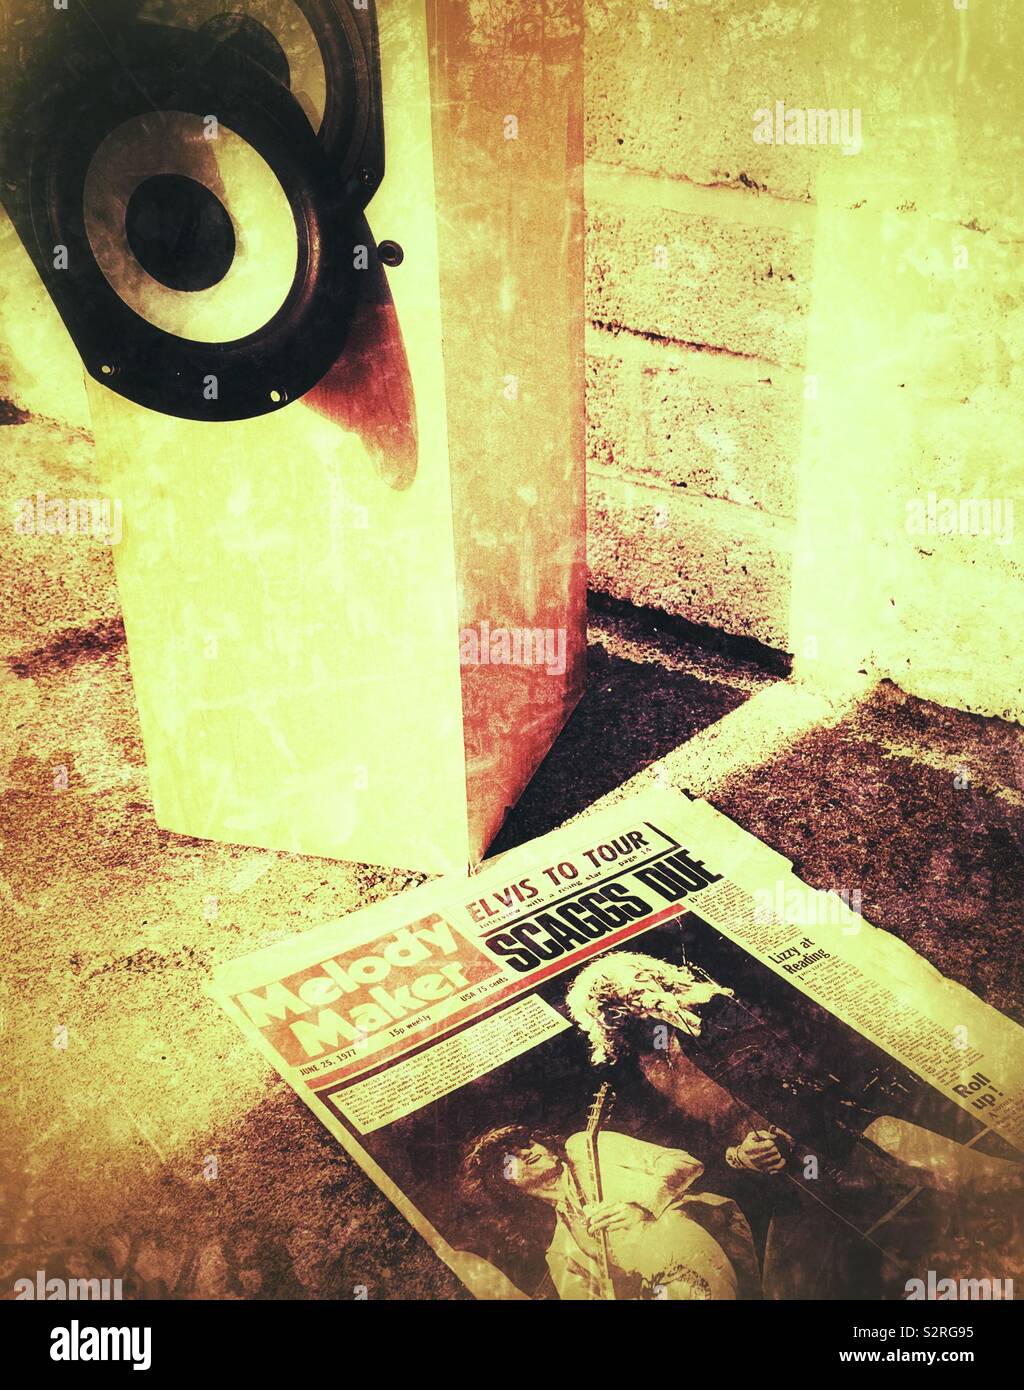 Rotture di casse hi-fi e copia di Melody Maker a partire dagli anni settanta la musica rock di carta con fotografia di Led Zeppelin sul coperchio Foto Stock